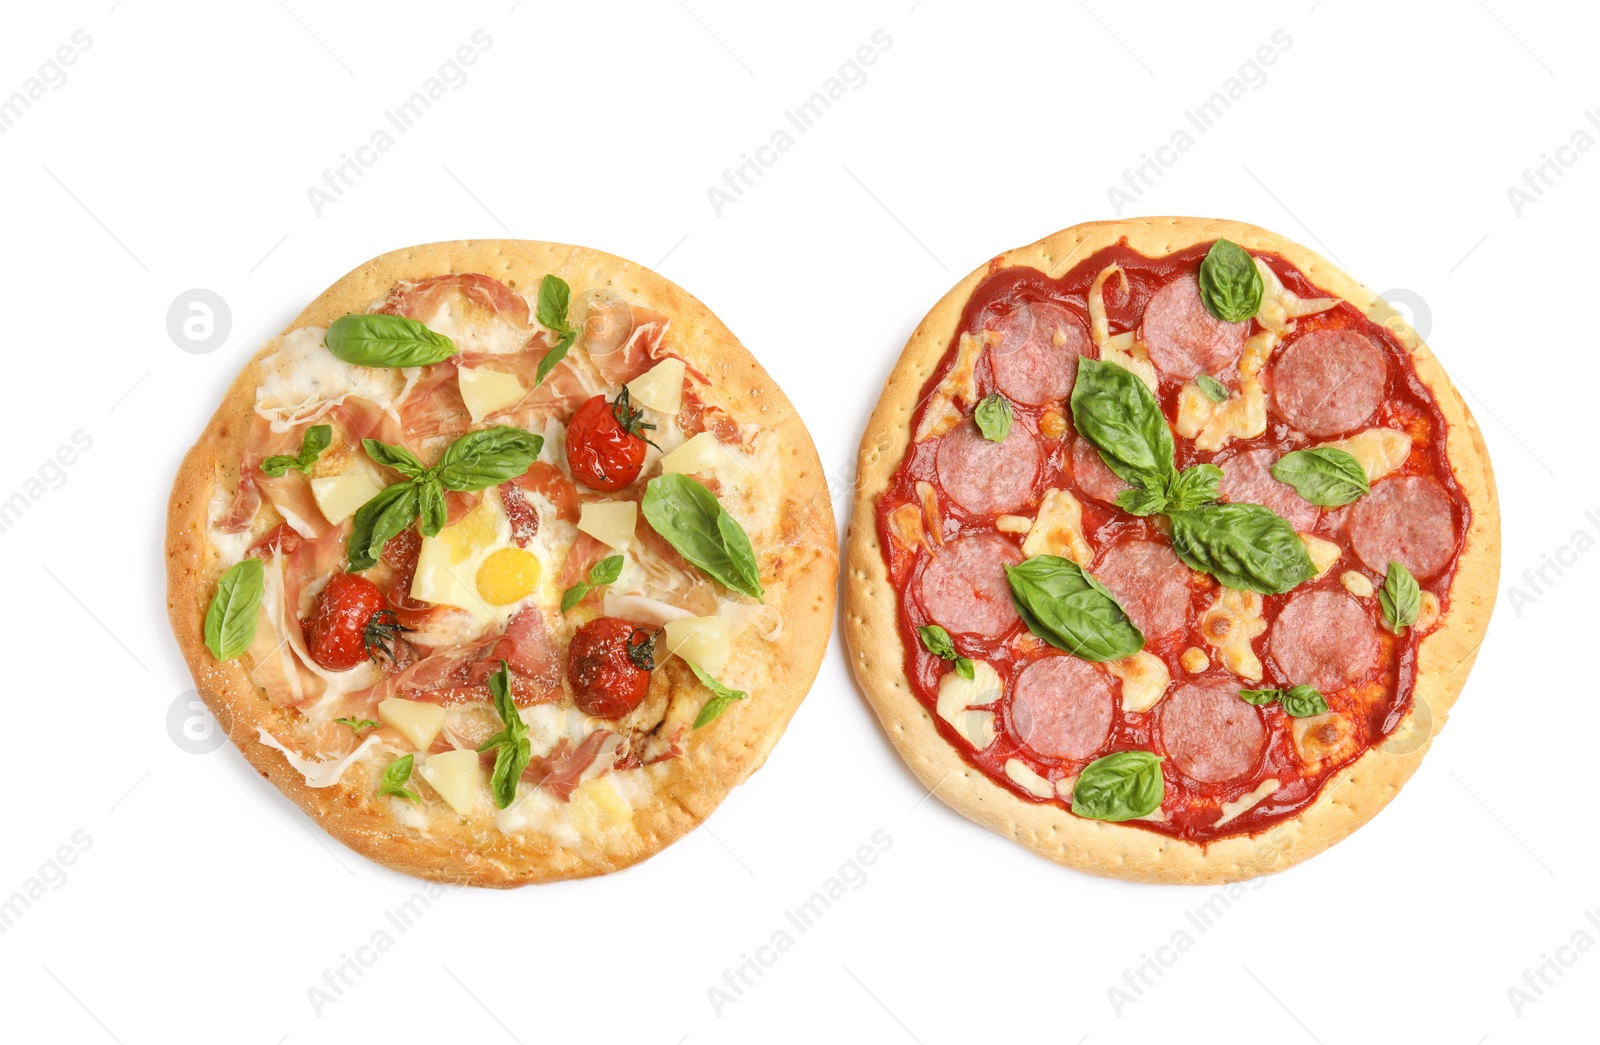 Photo of Delicious pita pizzas on white background, top view